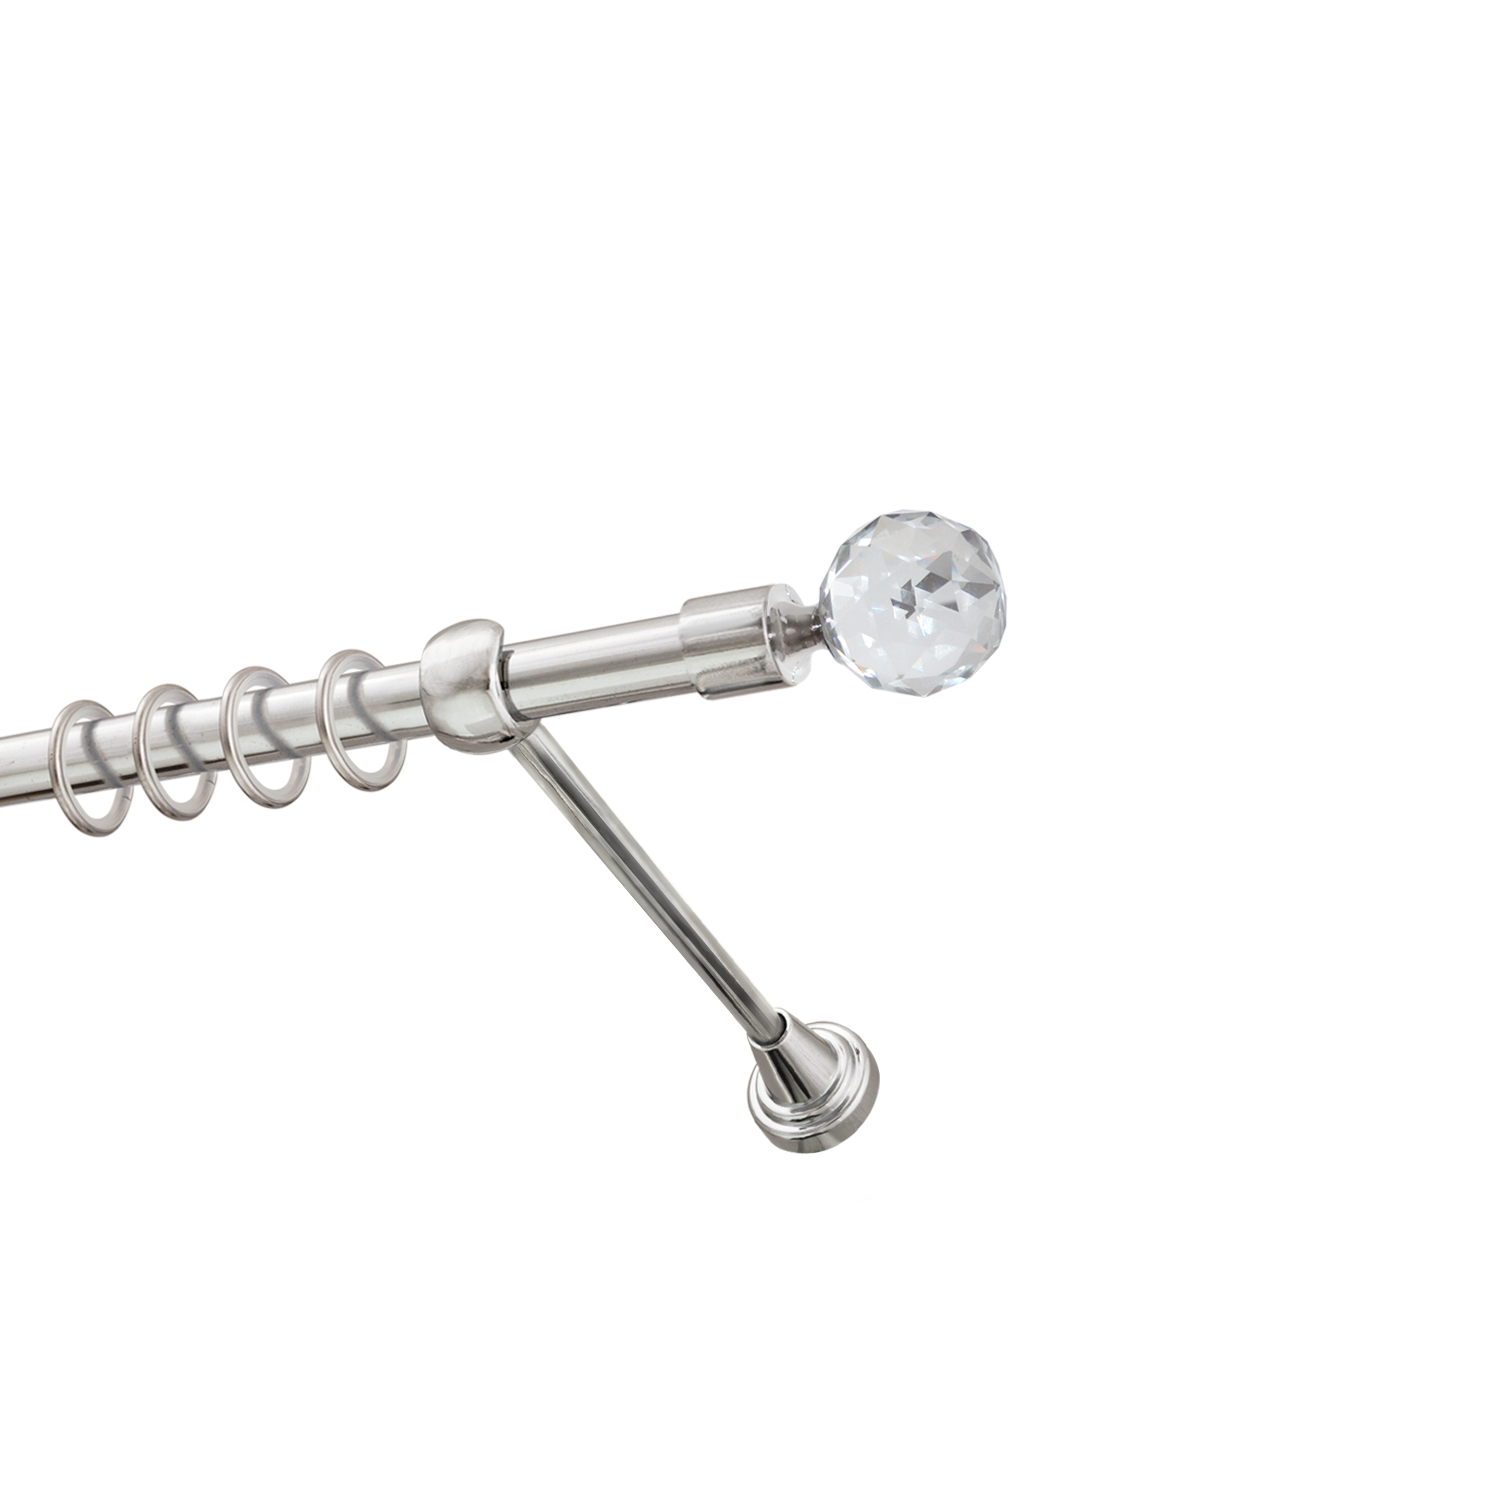 Металлический карниз для штор Карат, однорядный 16 мм, серебро, гладкая штанга, длина 160 см - фото Wikidecor.ru